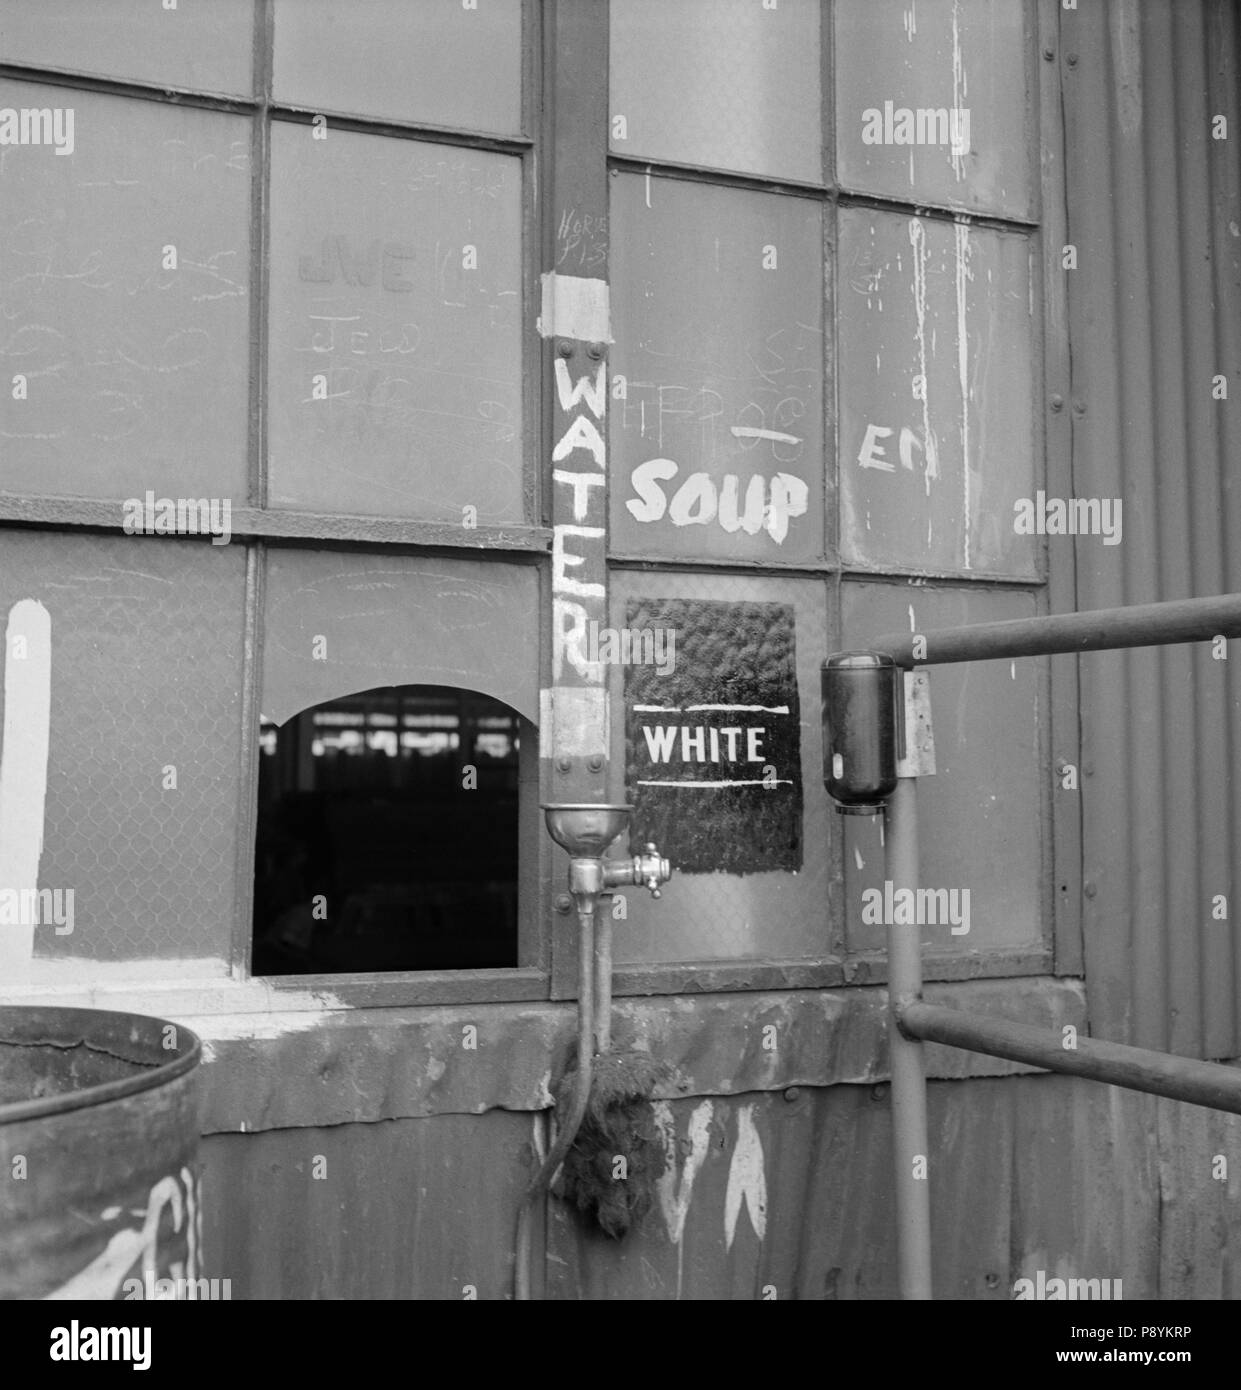 Fontaine d'eau potable marqué 'white' Bethlehem-Fairfield, chantiers navals, Baltimore Maryland, USA, Arthur S. Siegel, Office of War Information, Mai 1943 Banque D'Images